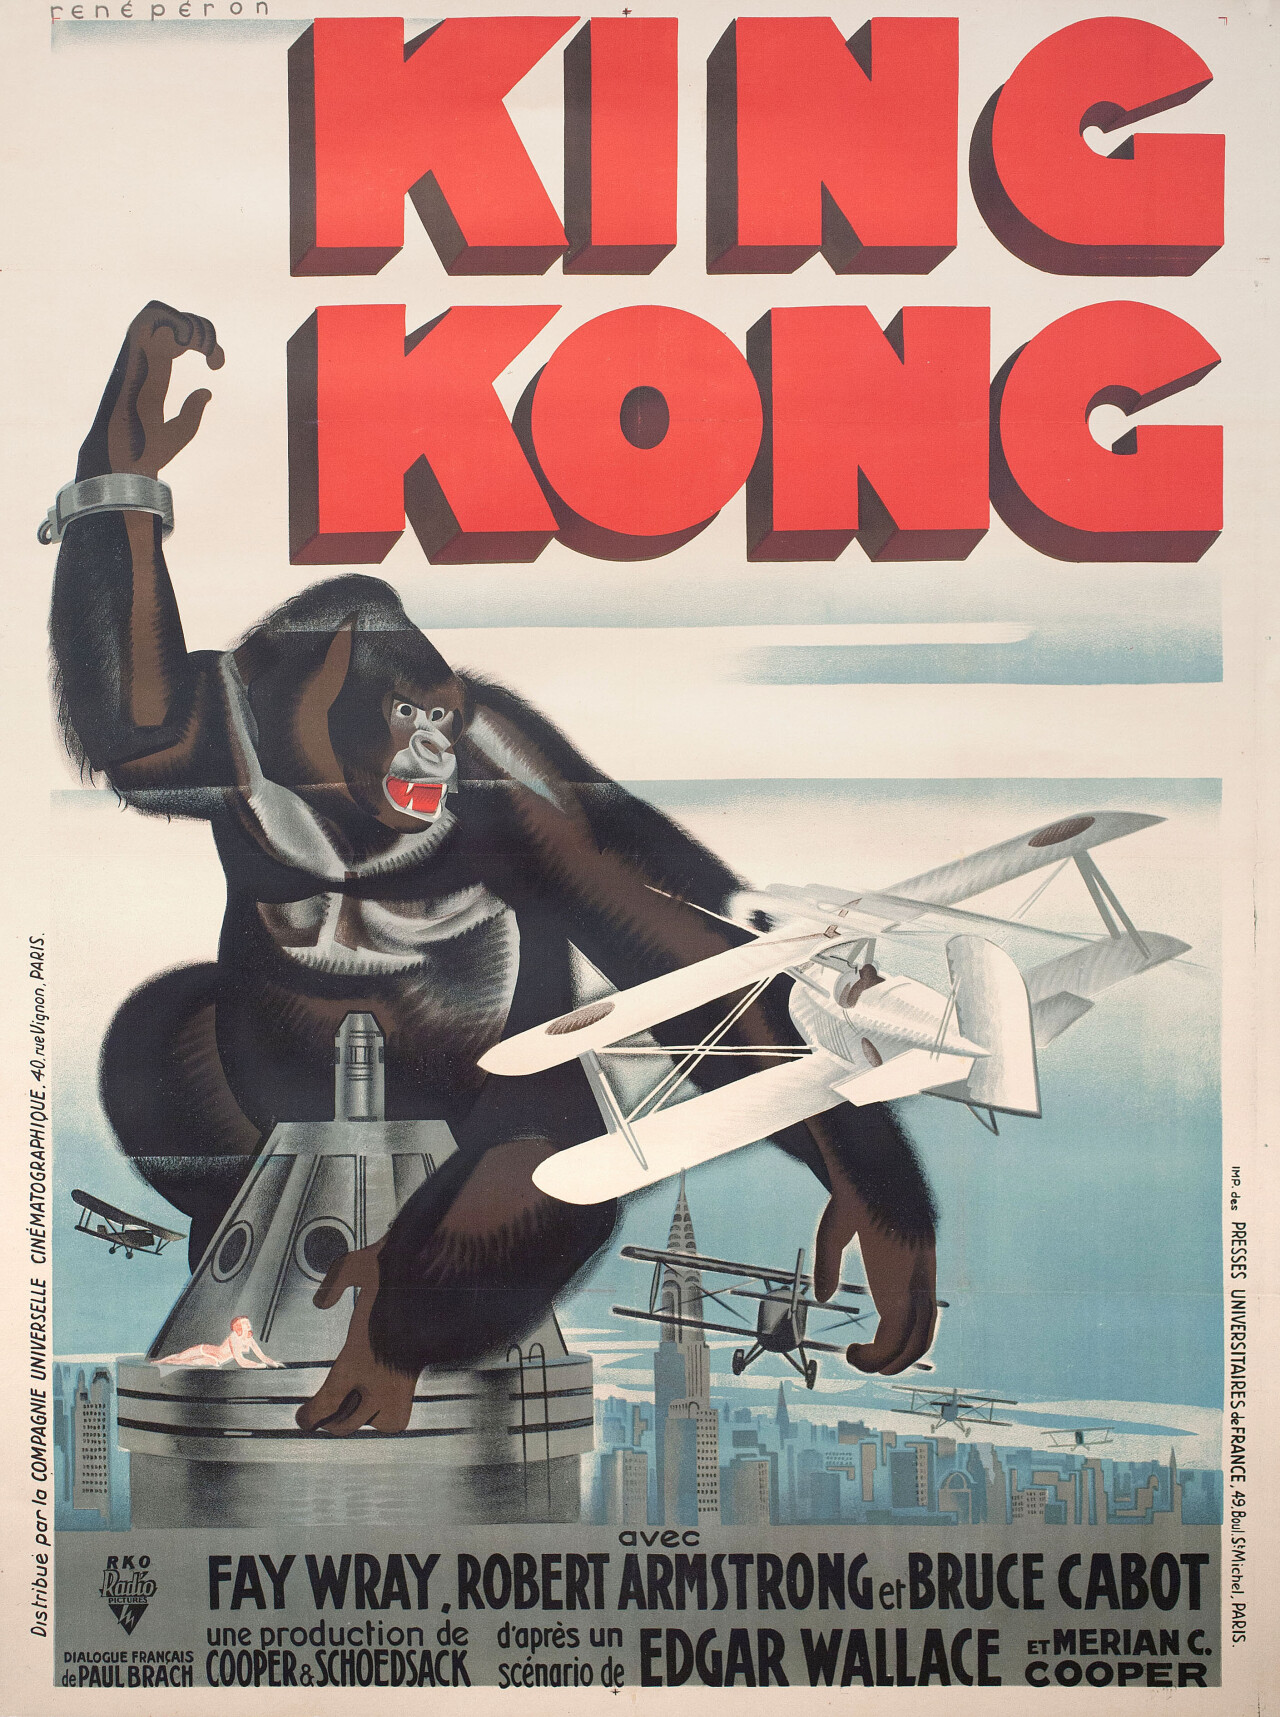 Кинг Конг (King Kong, 1933), режиссёр Мериан К. Купер, французский постер к фильму, автор Рене Перон (монстры, 1933 год)